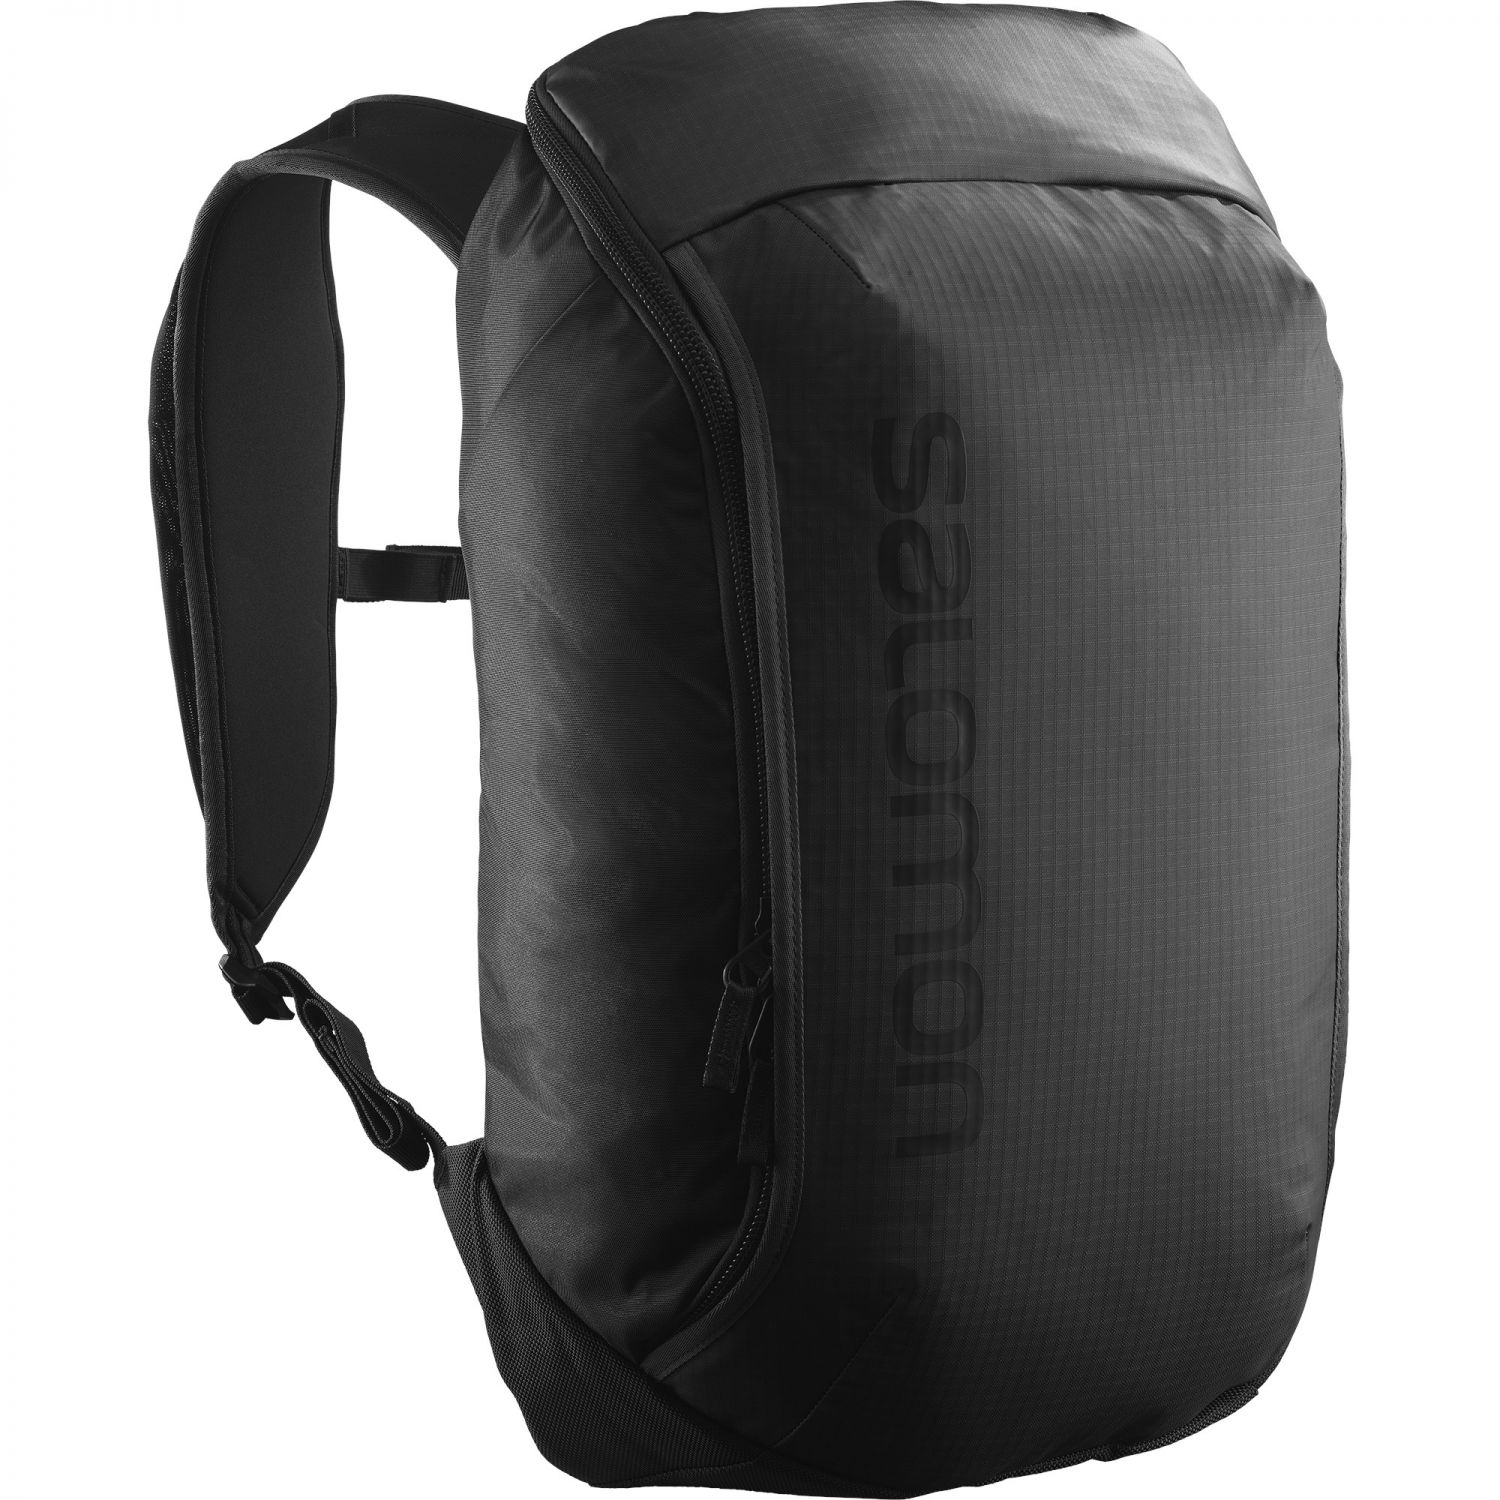 Salomon Outlife Pack 20, backpack, black